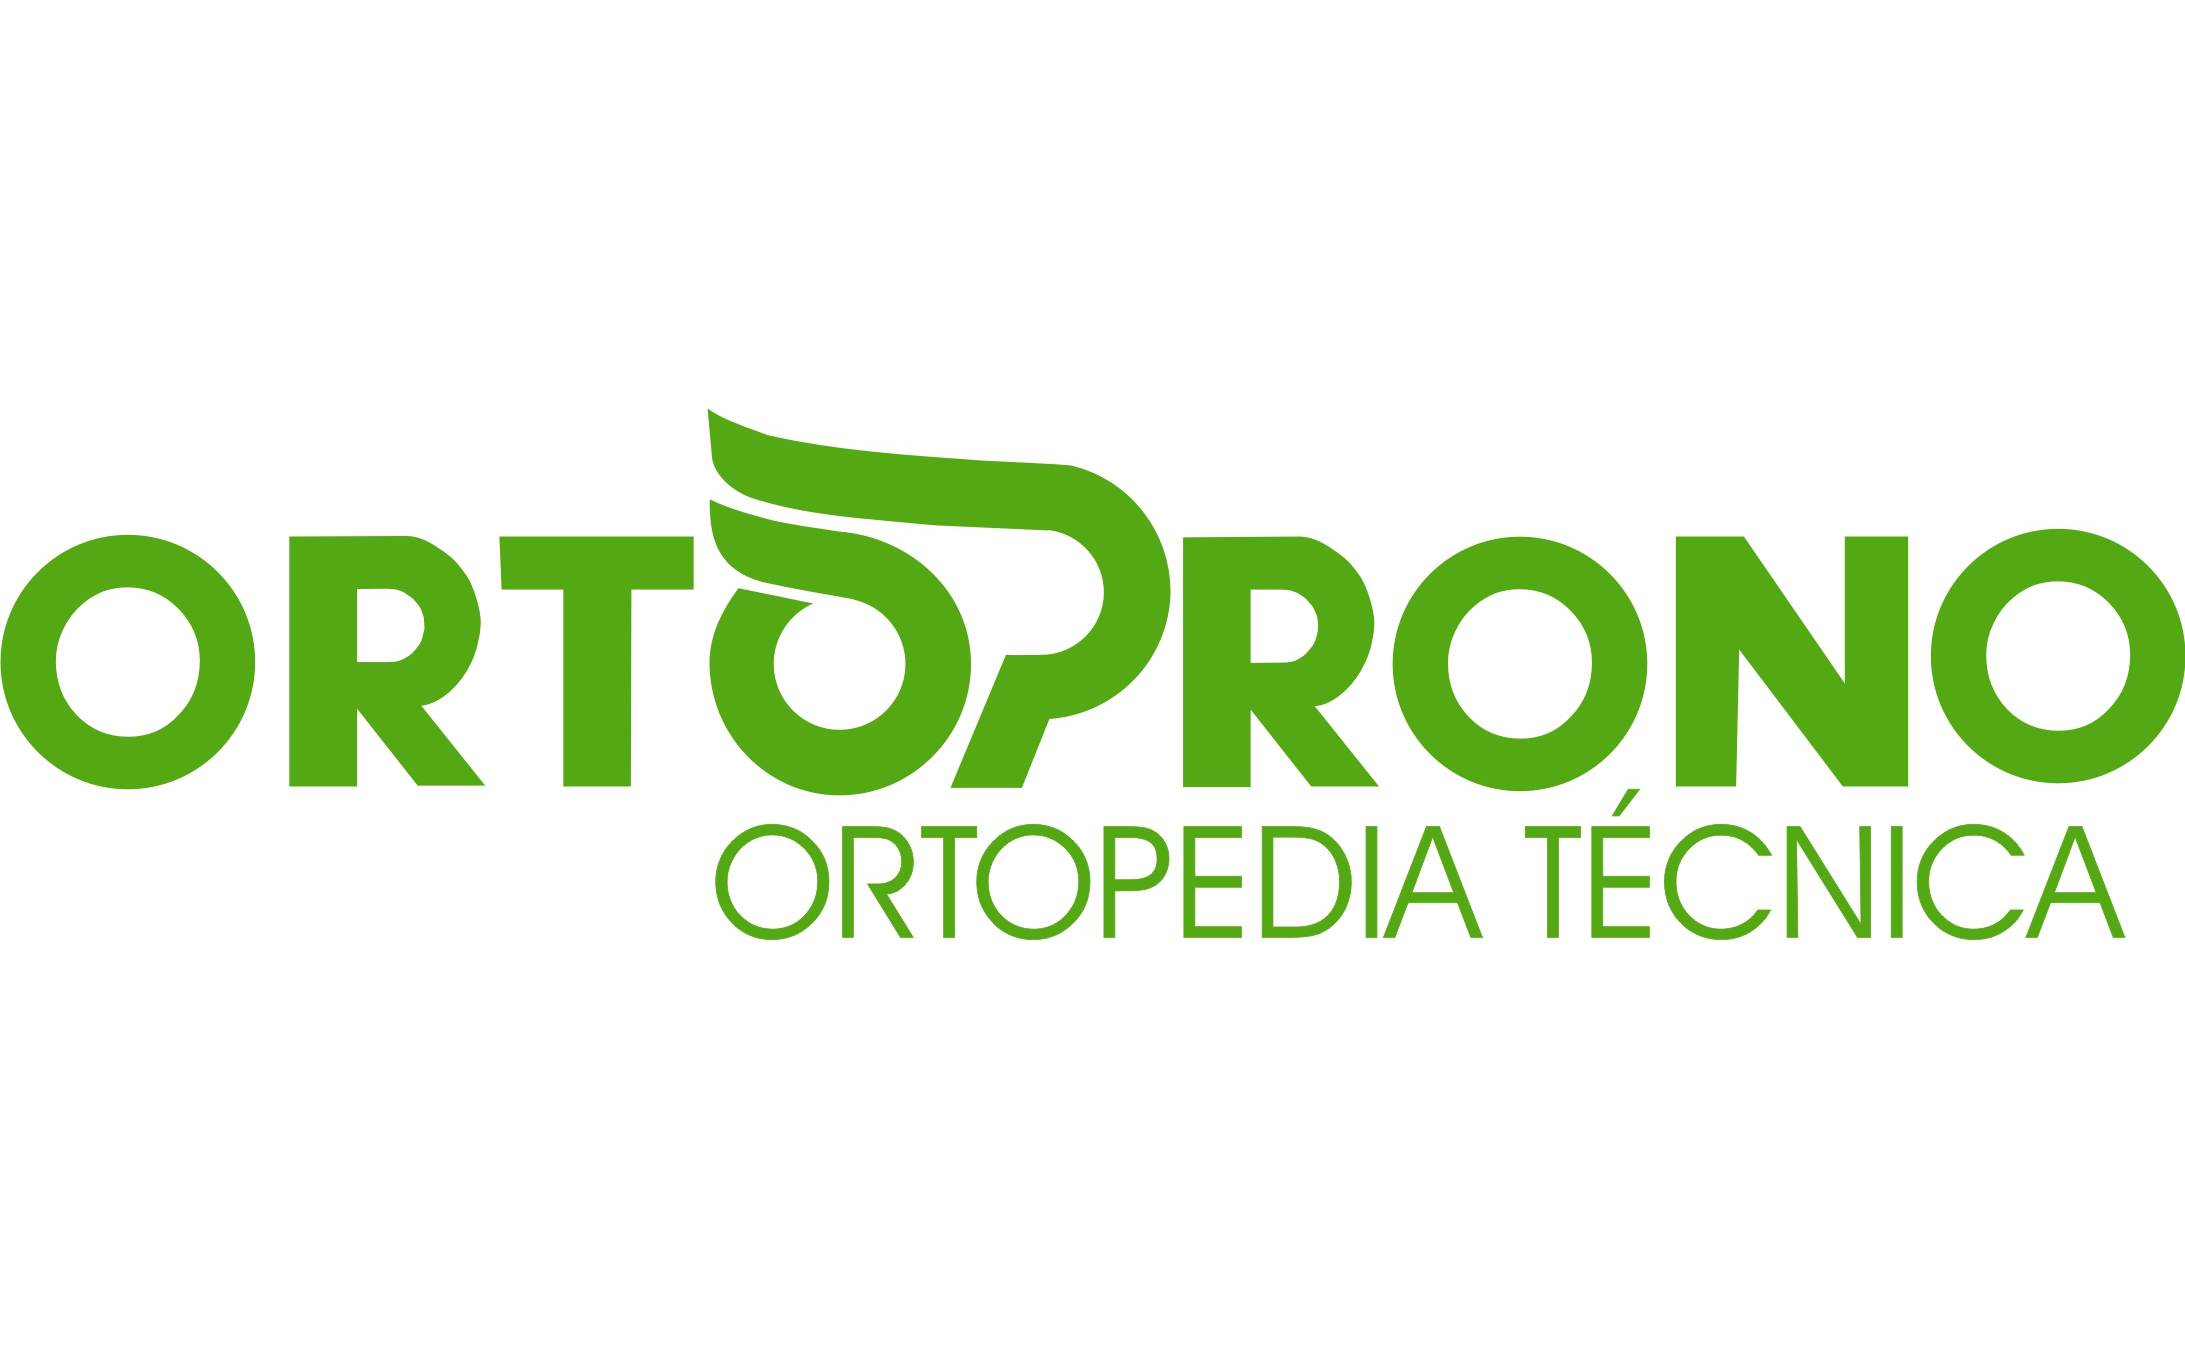 Ortoprono